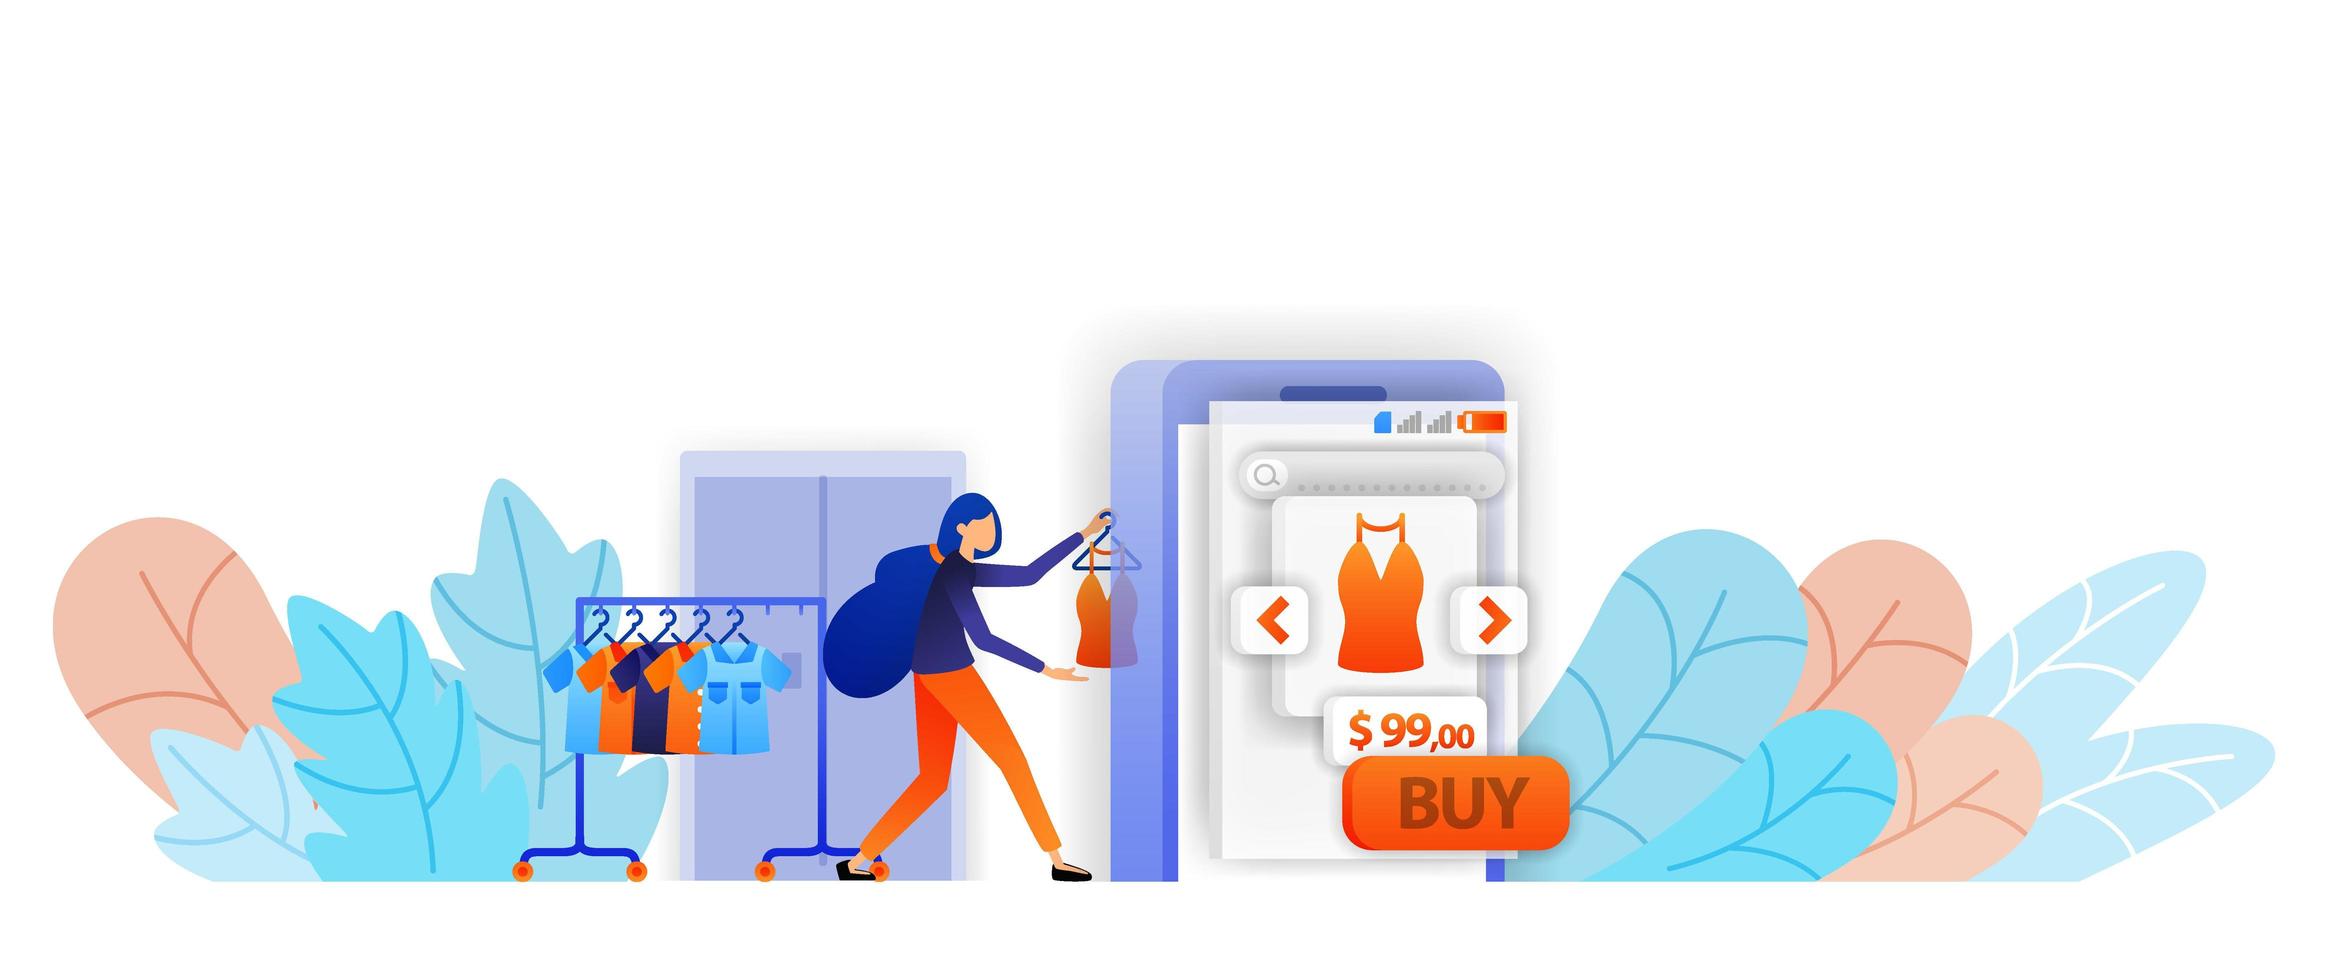 Online-Shop-Verkäufer zeigen Kleidung im mobilen E-Commerce an. Mit einem Online-Shop ist das Einkaufen einfacher. Vektor-Illustrationskonzept für Landing Page, Web, UI, Banner, Flyer, Poster, Vorlage, Hintergrund vektor